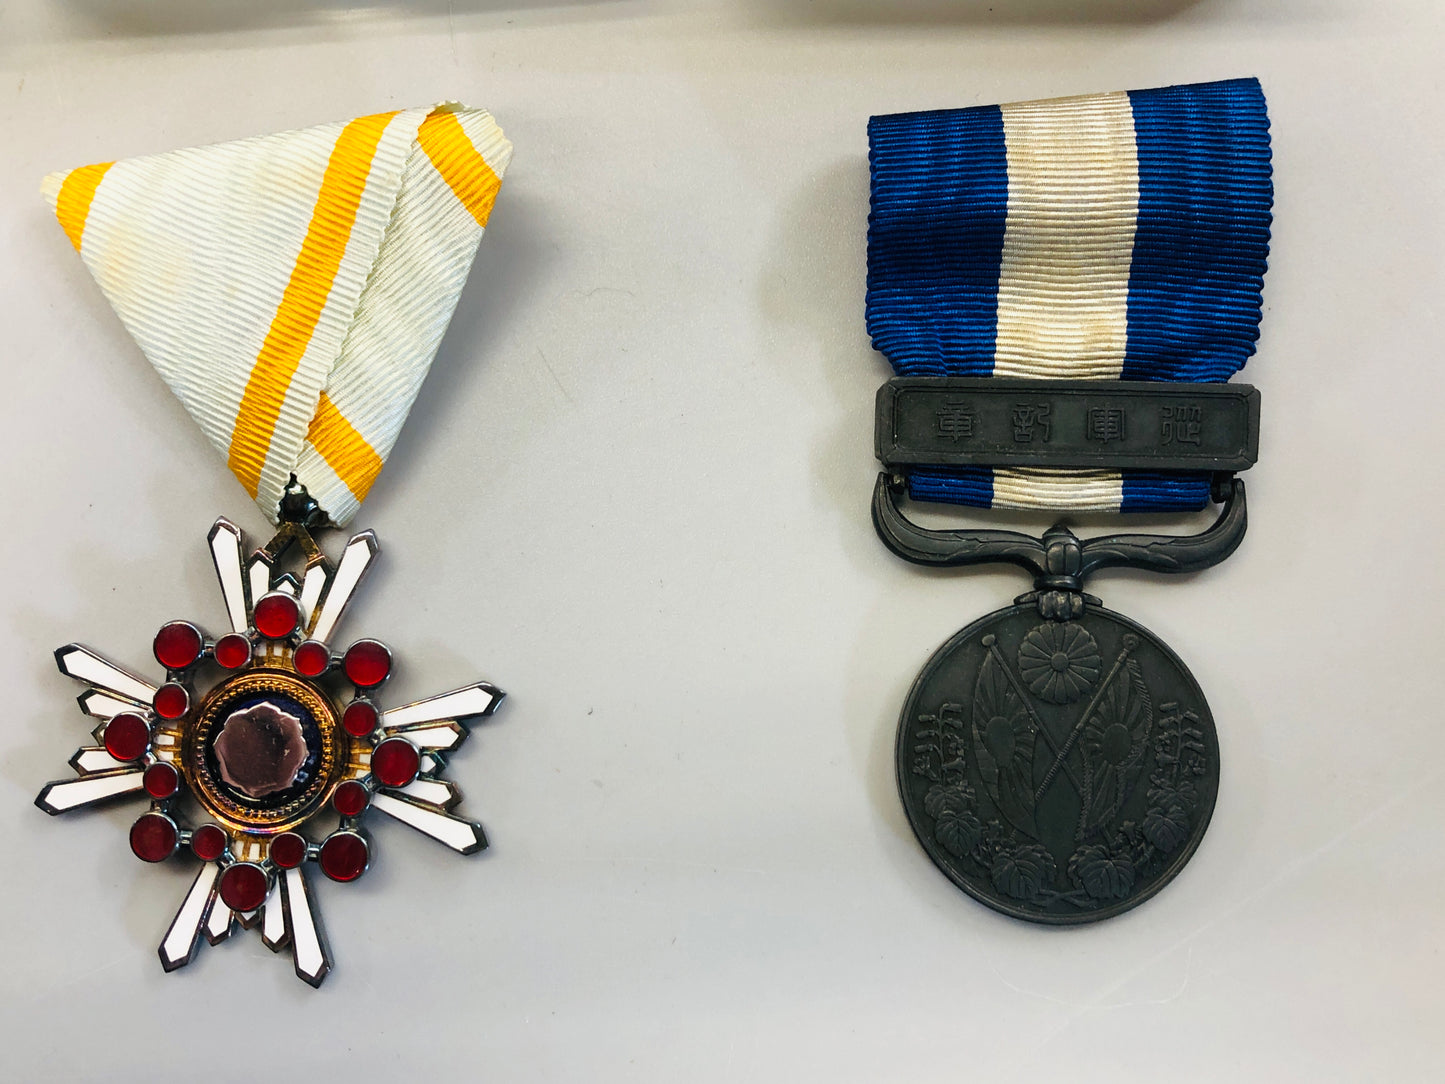 Y5355 Imperial Japan Army Medal set of 6 military order Japan WW2 vintage